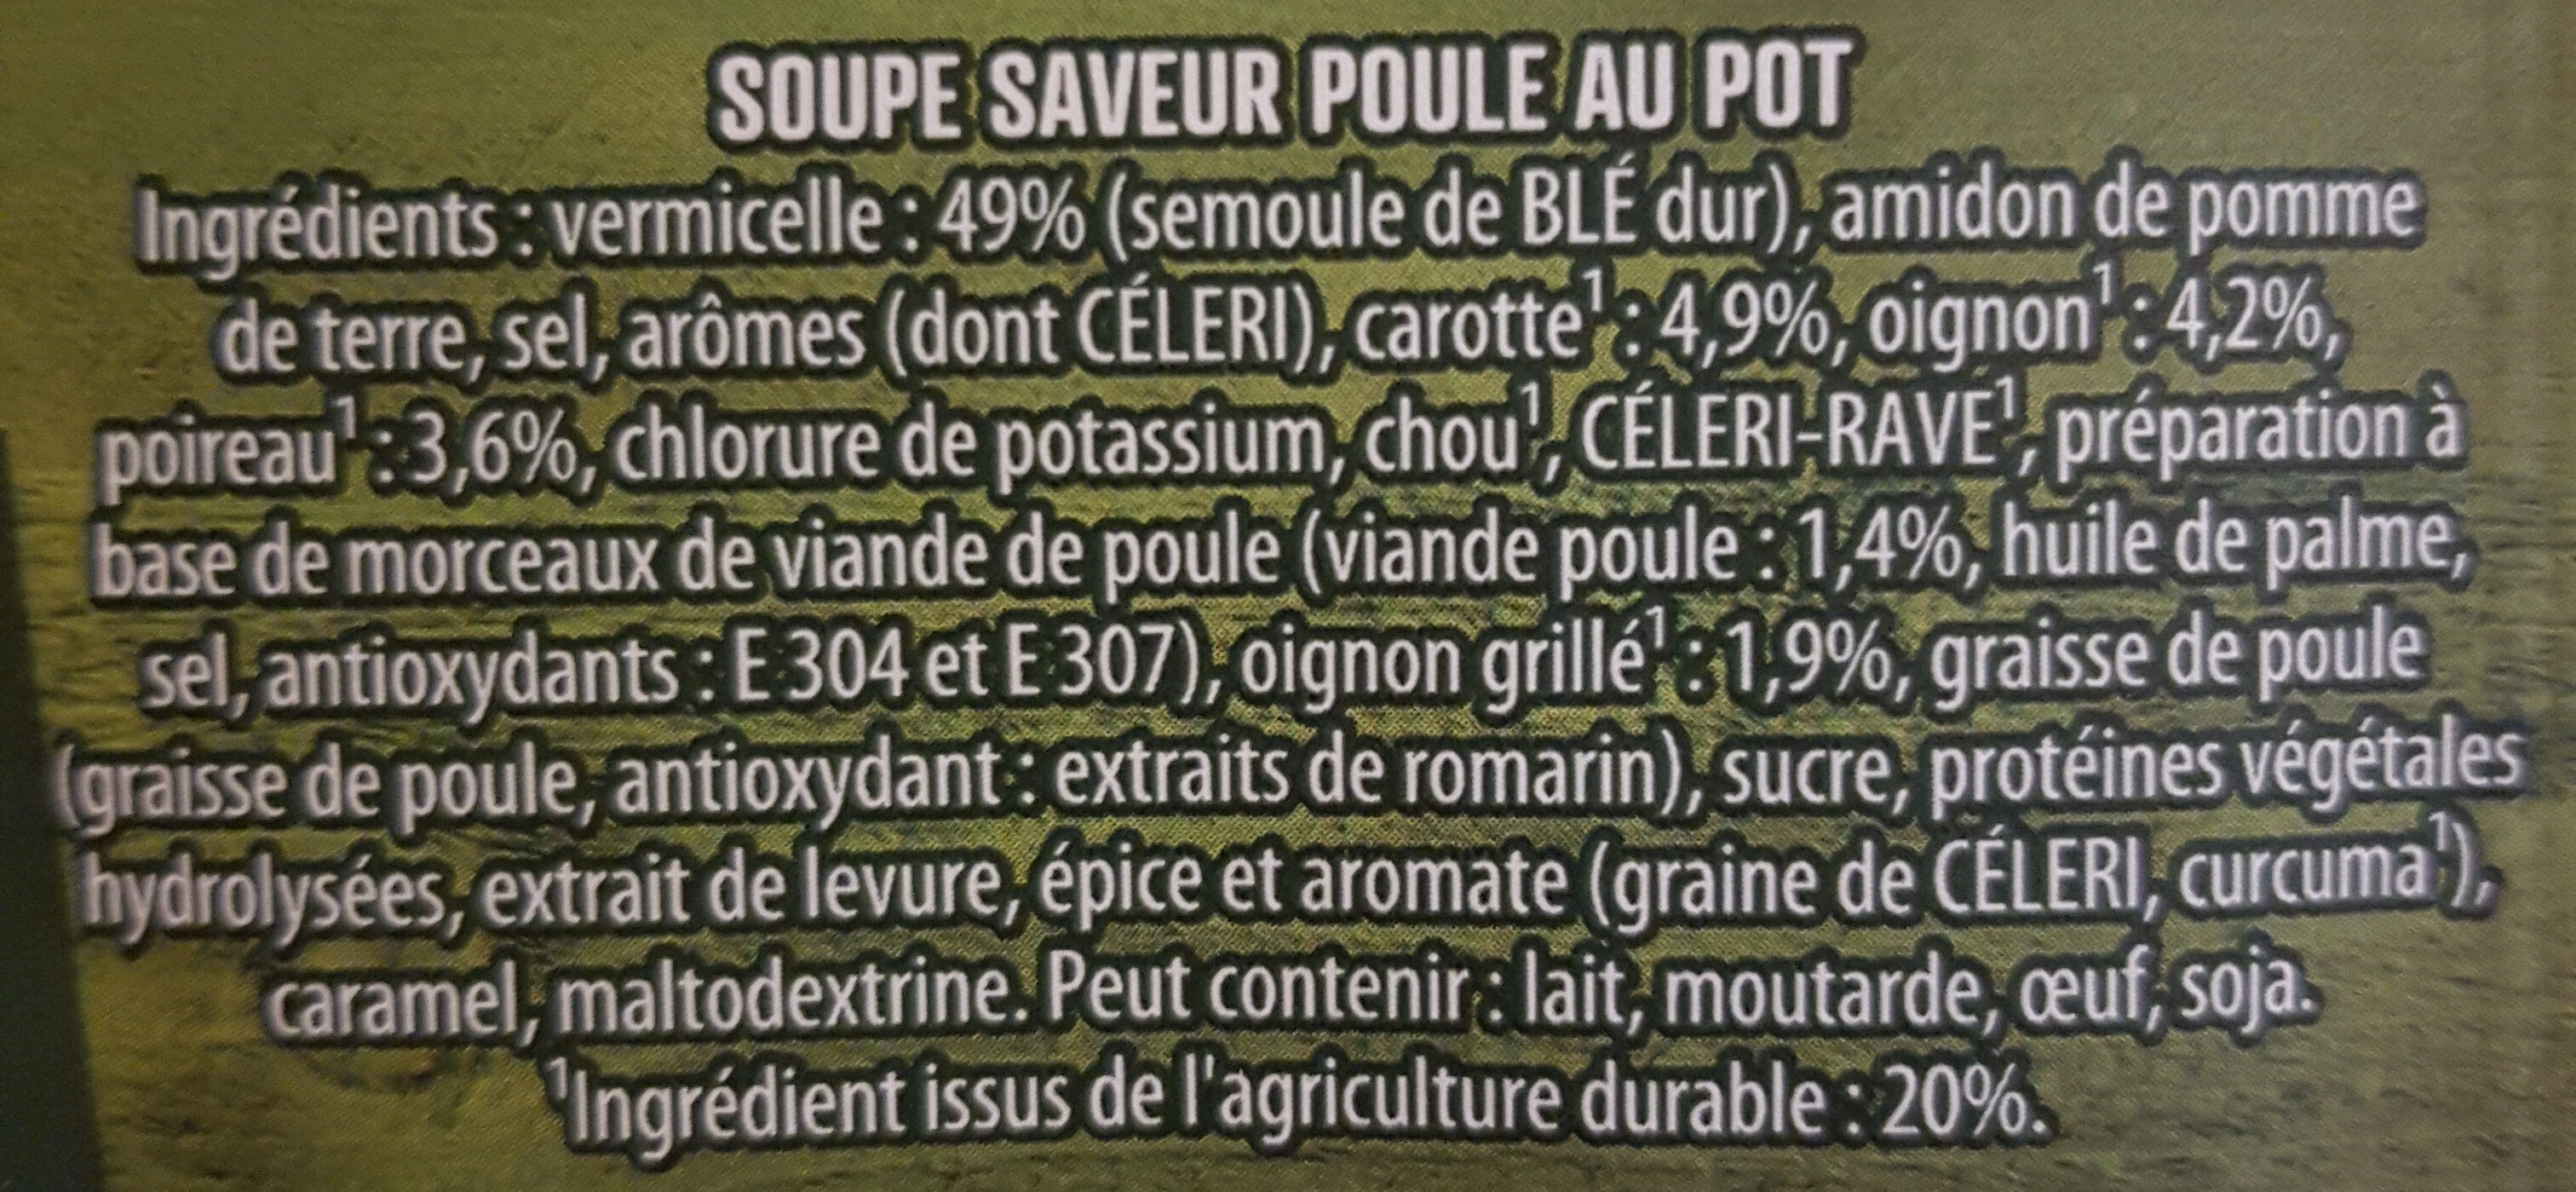 Soupe Saveur Poule au Pot - Ingrédients